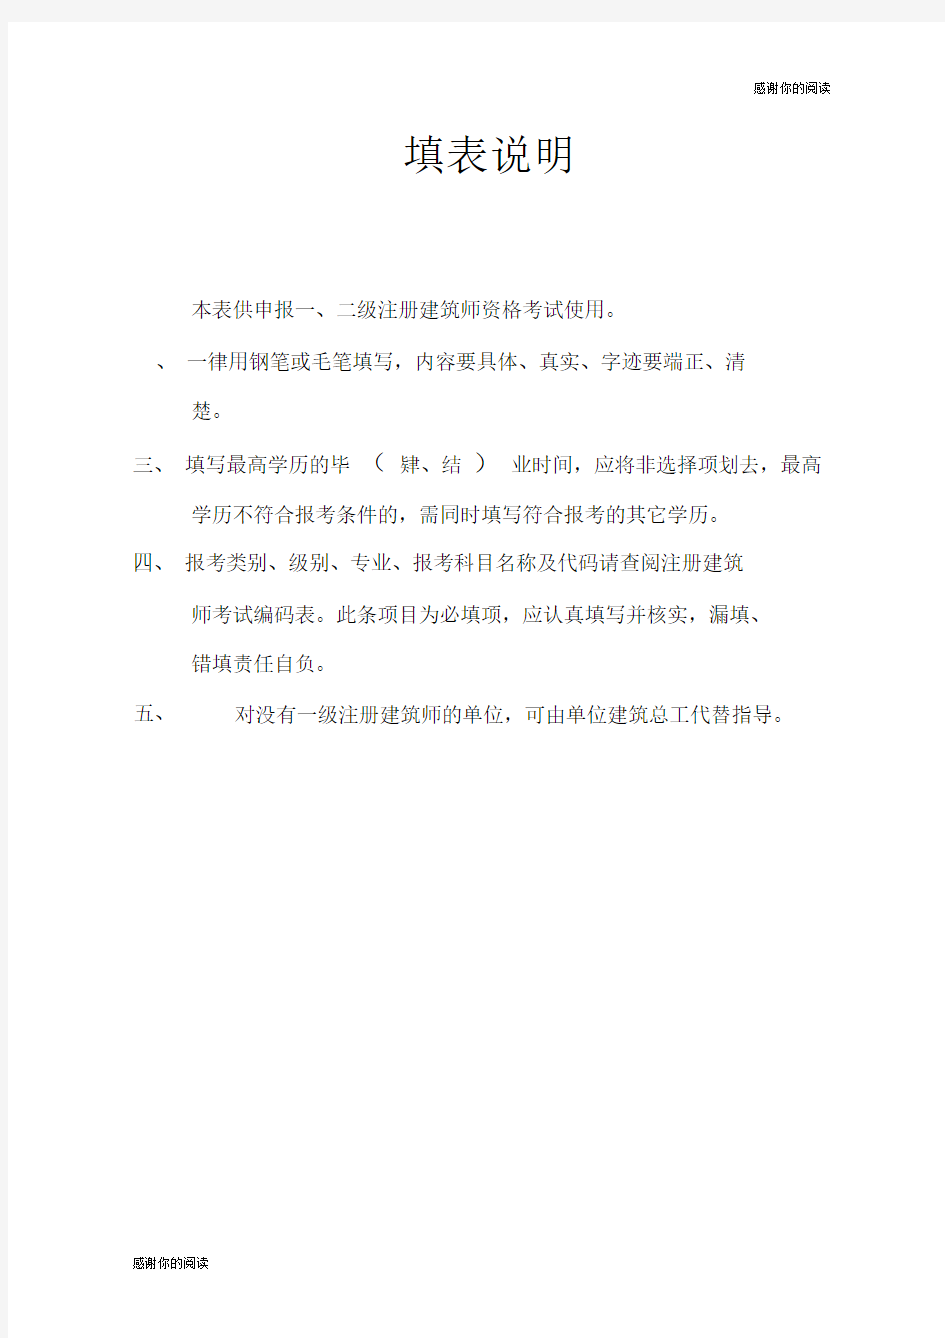 中华人民共和国注册建筑师执业资格考试申报表